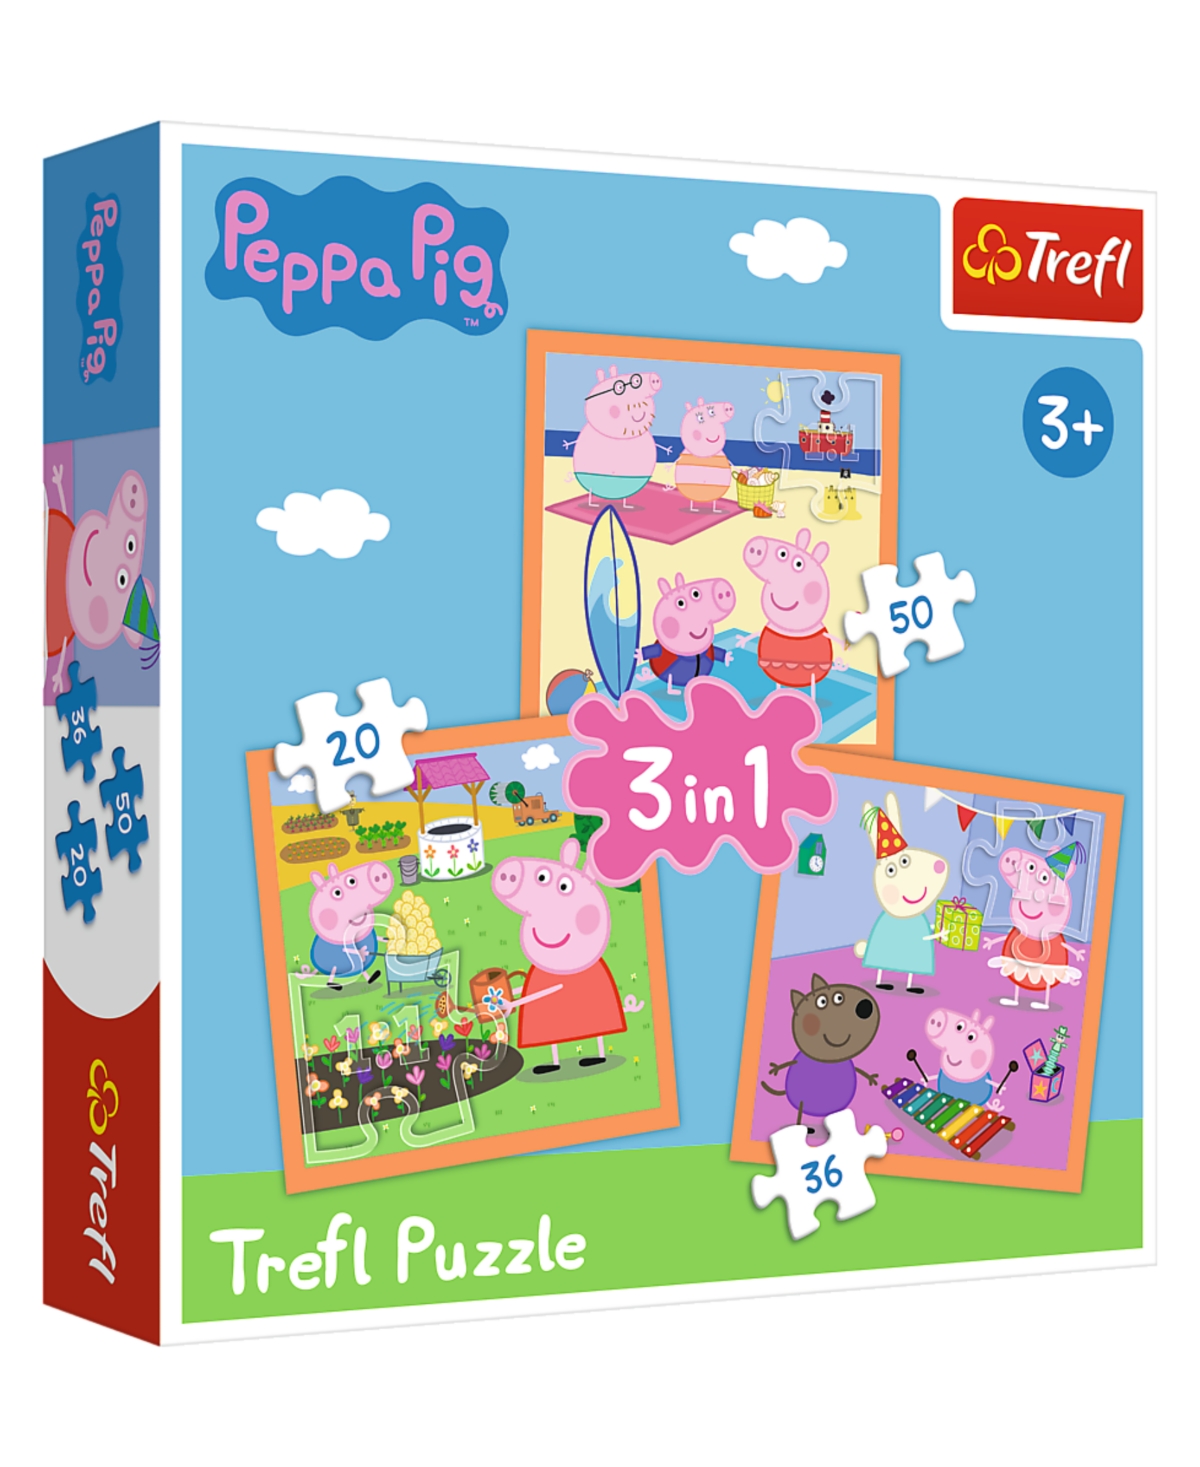 Trefl Kids' Peppa Pig 3 In 1 20, 36, 50 Piece Puzzle In Multi